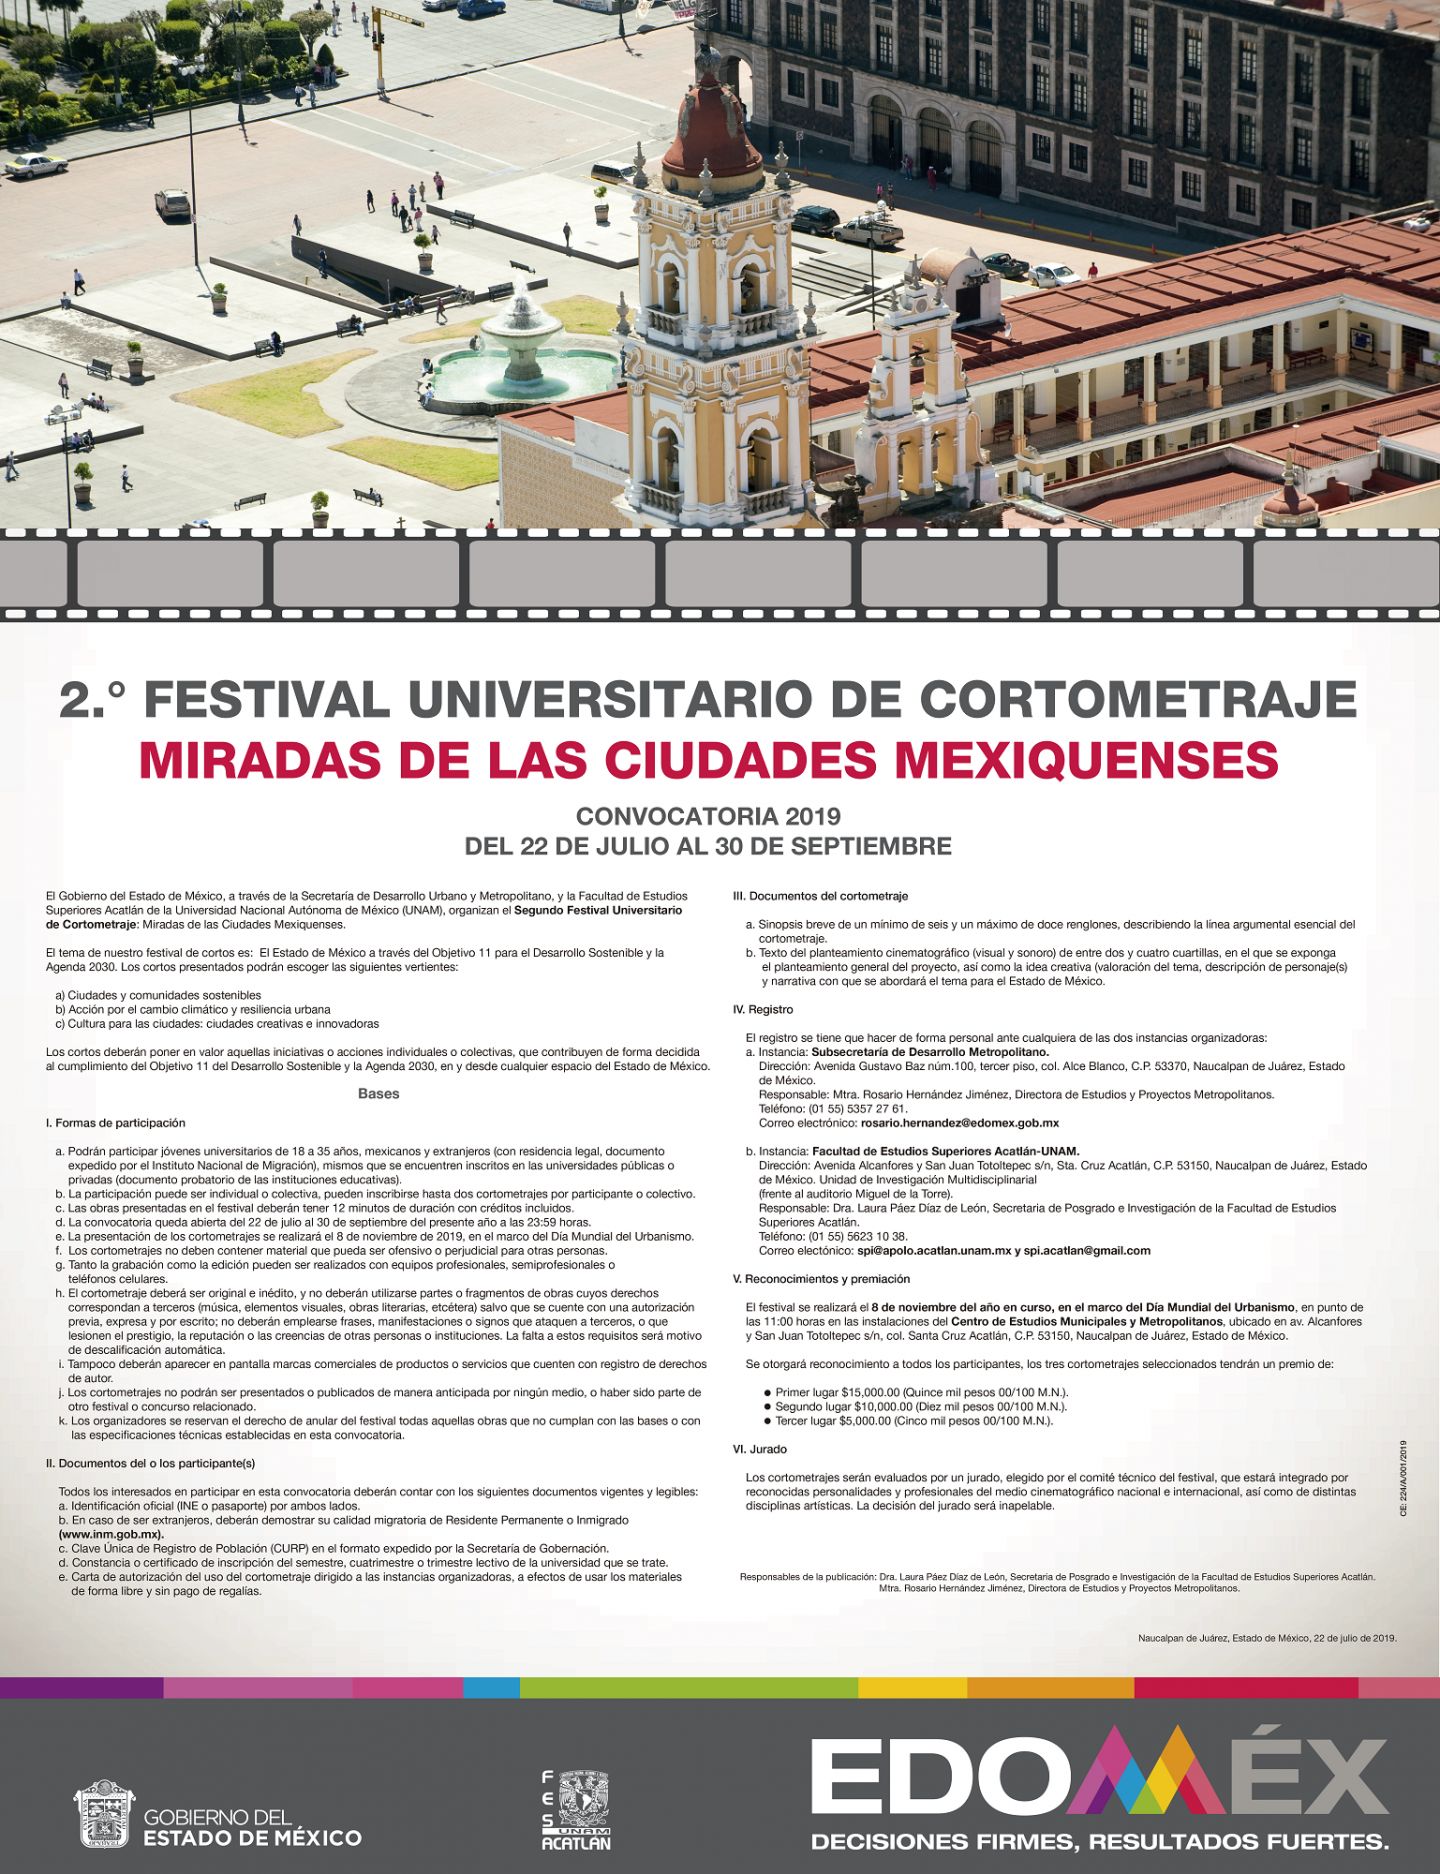 Invita GEN a participar en el segundo festival universitario de cortometraje "miradas de las ciudades mexiquenses" 